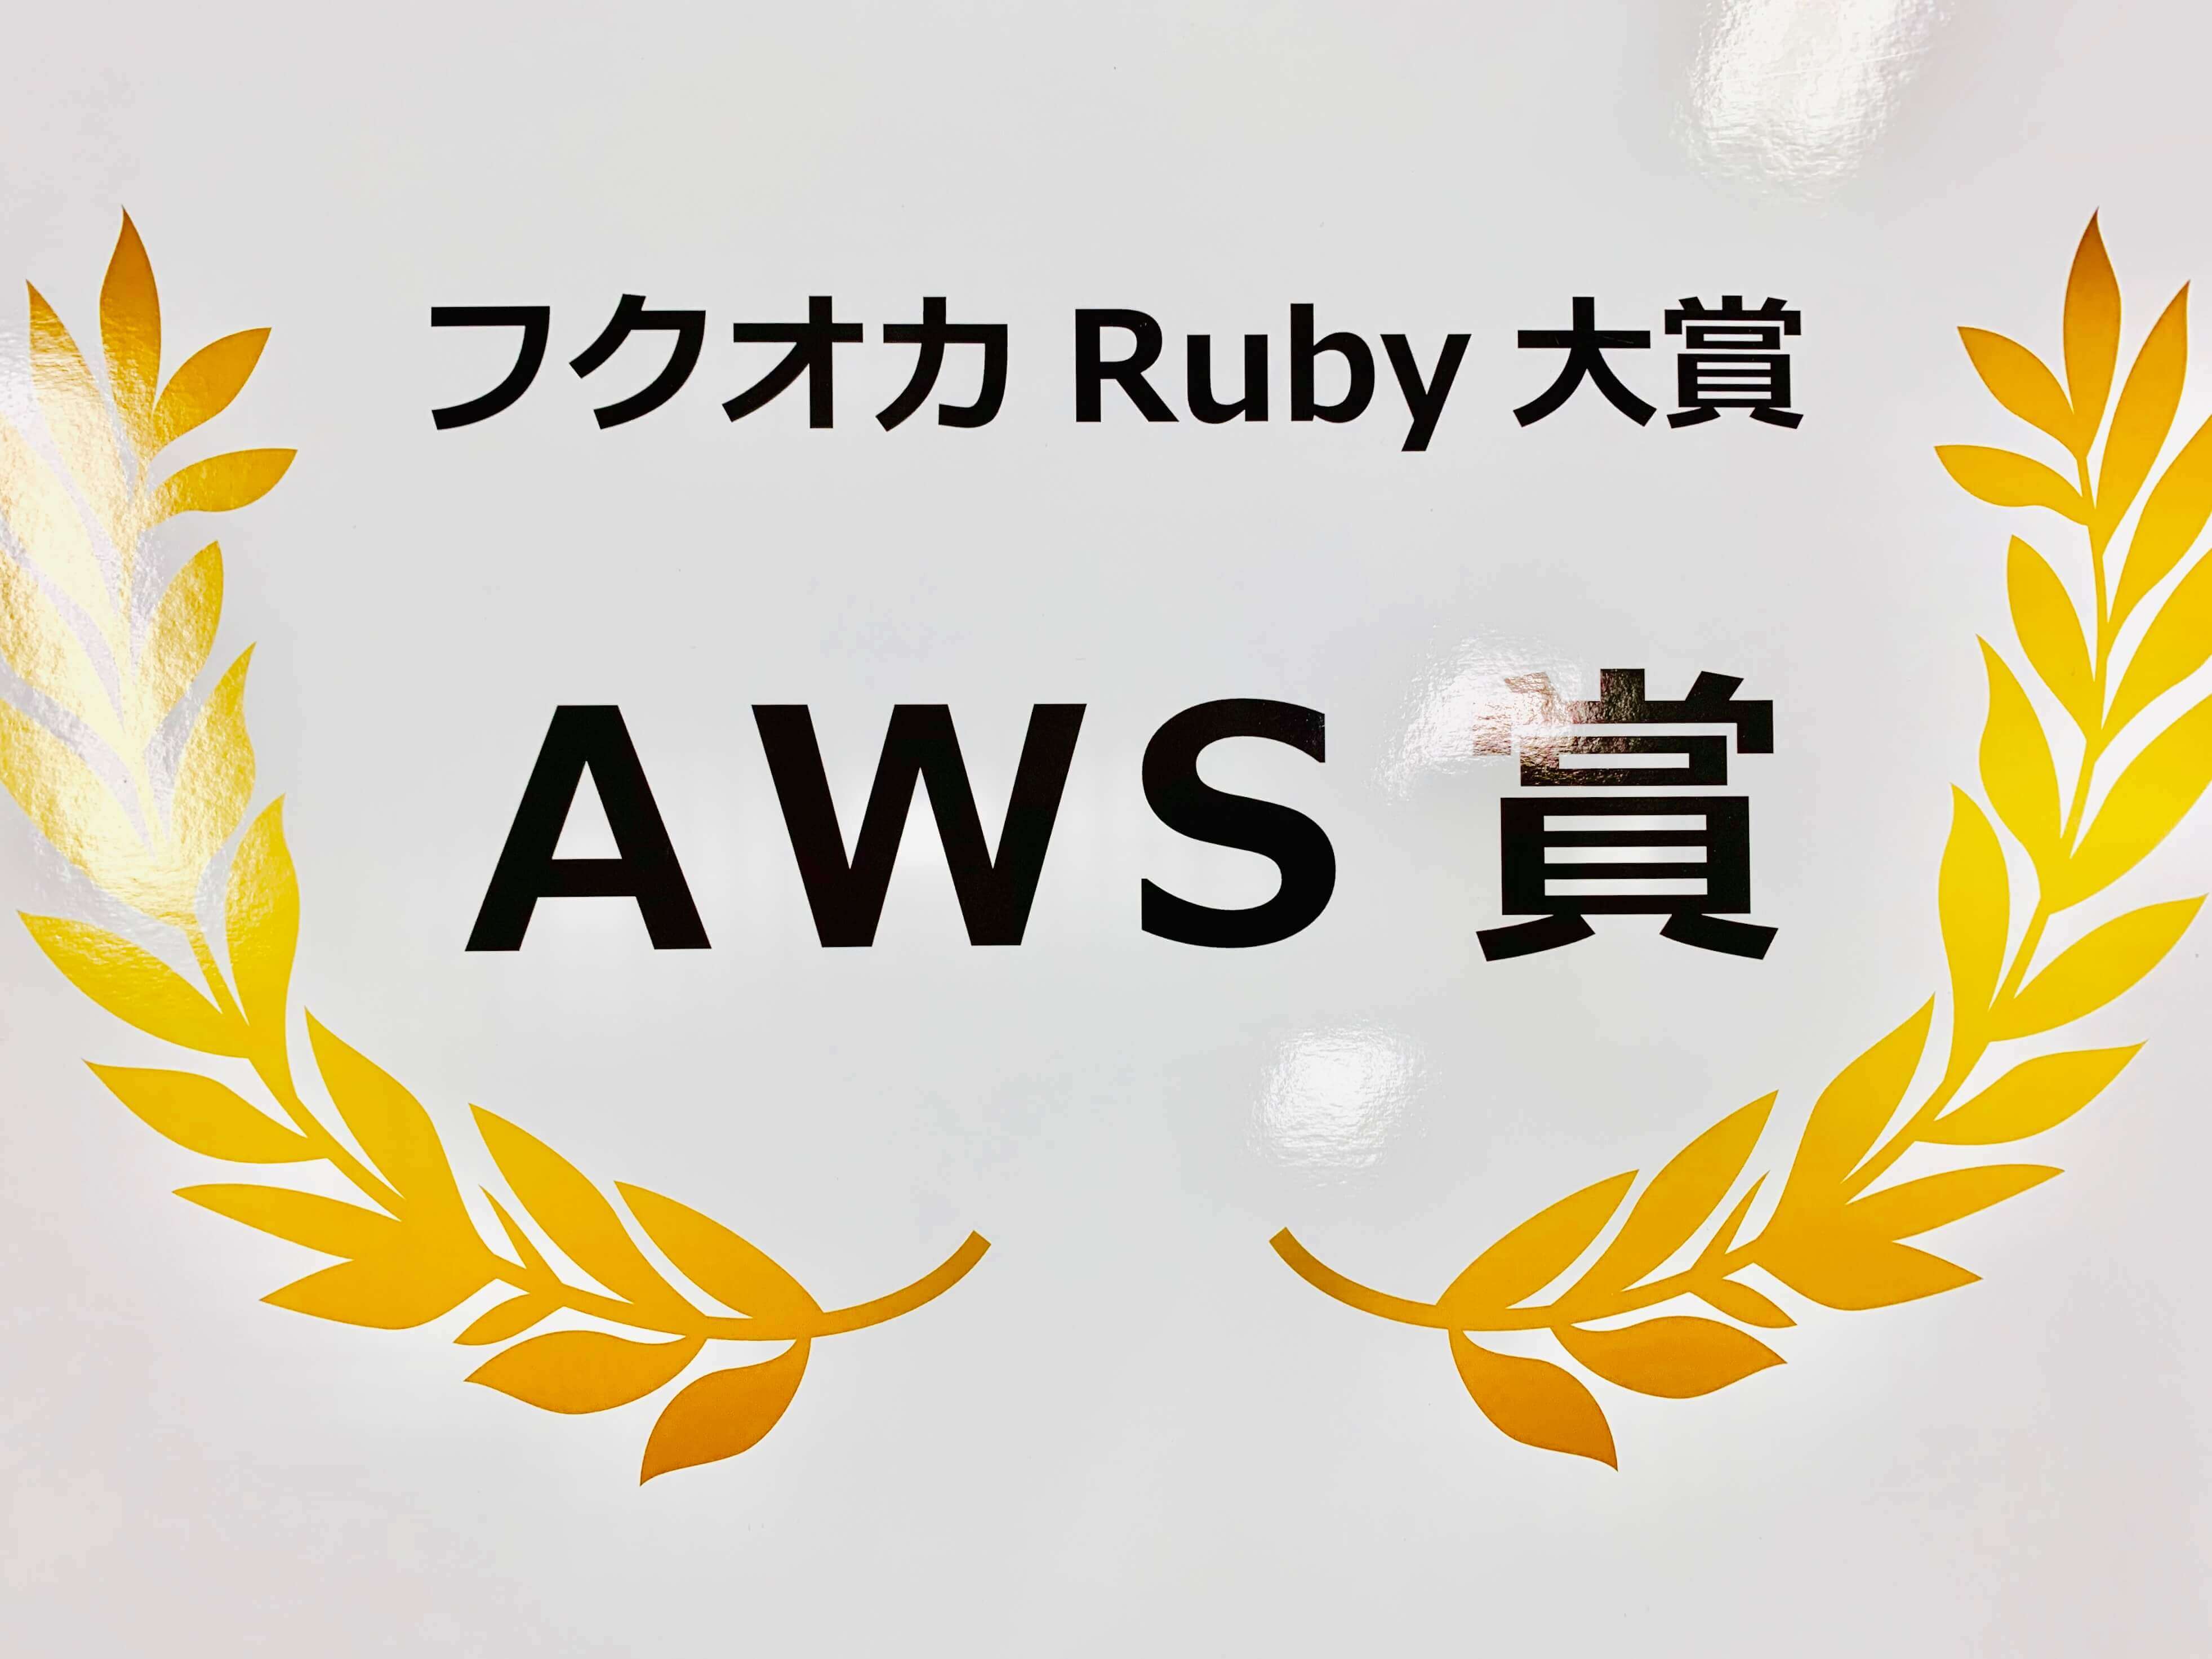 AWS Award at Fukuoka Ruby Award 2019